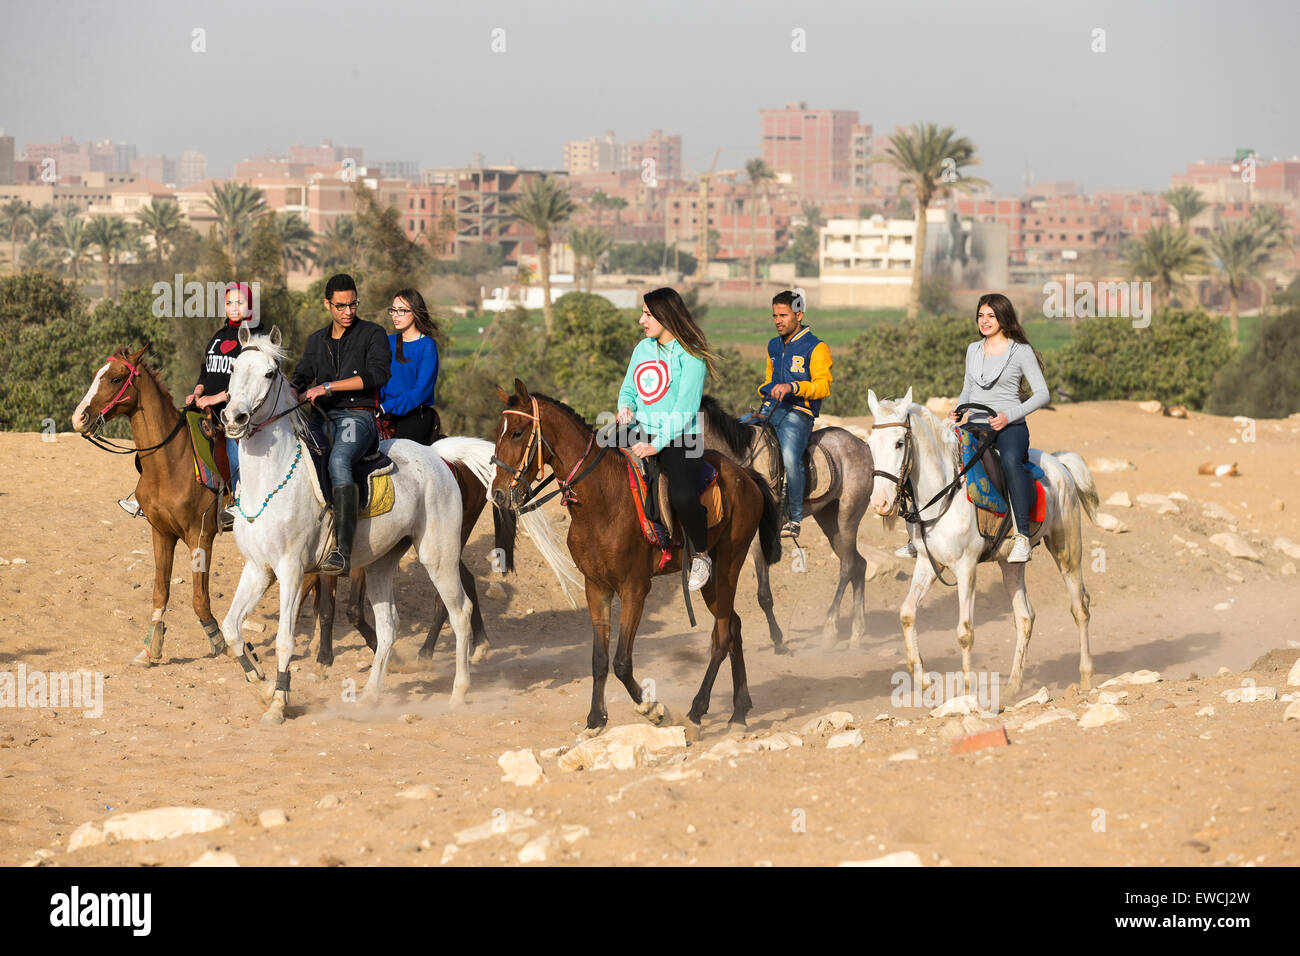 Arabian Horse. Group of teens riding in the desert. Kairo, Egypt Stock Photo